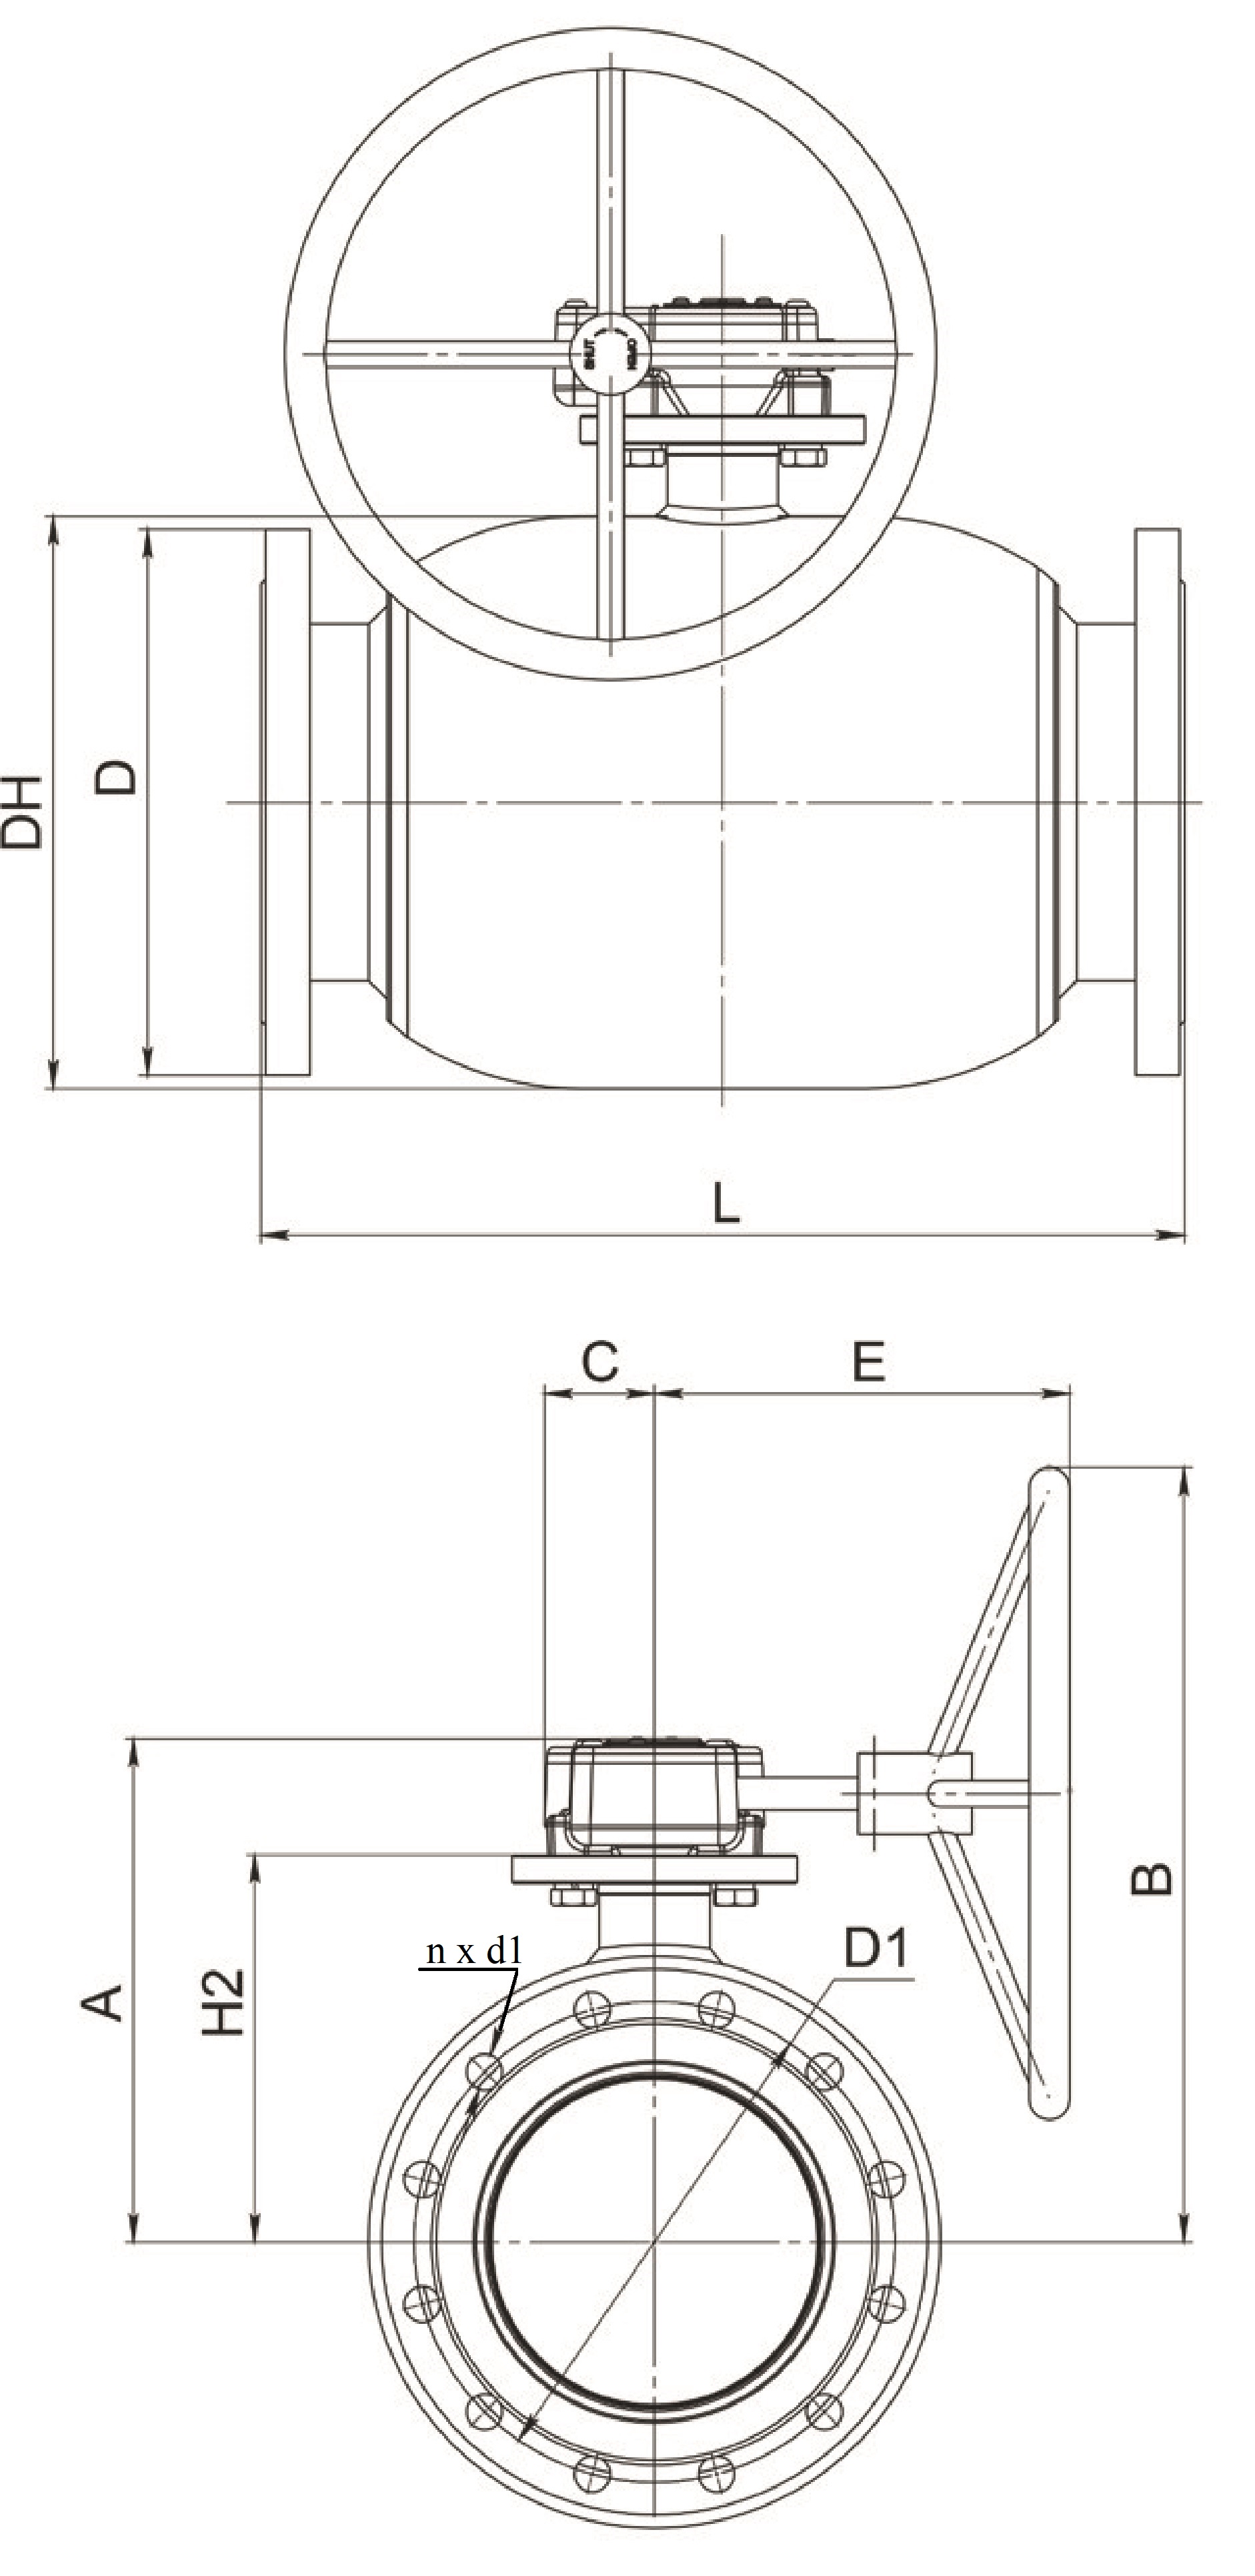 Краны шаровые Broen Ballomax-КШТ61.113.Р.16 Ду200-400 Ру16 полнопроходные с плавающим шаром, с ISO фланцем, корпус - сталь, уплотнение - EPDM, фланцевые, с редуктором